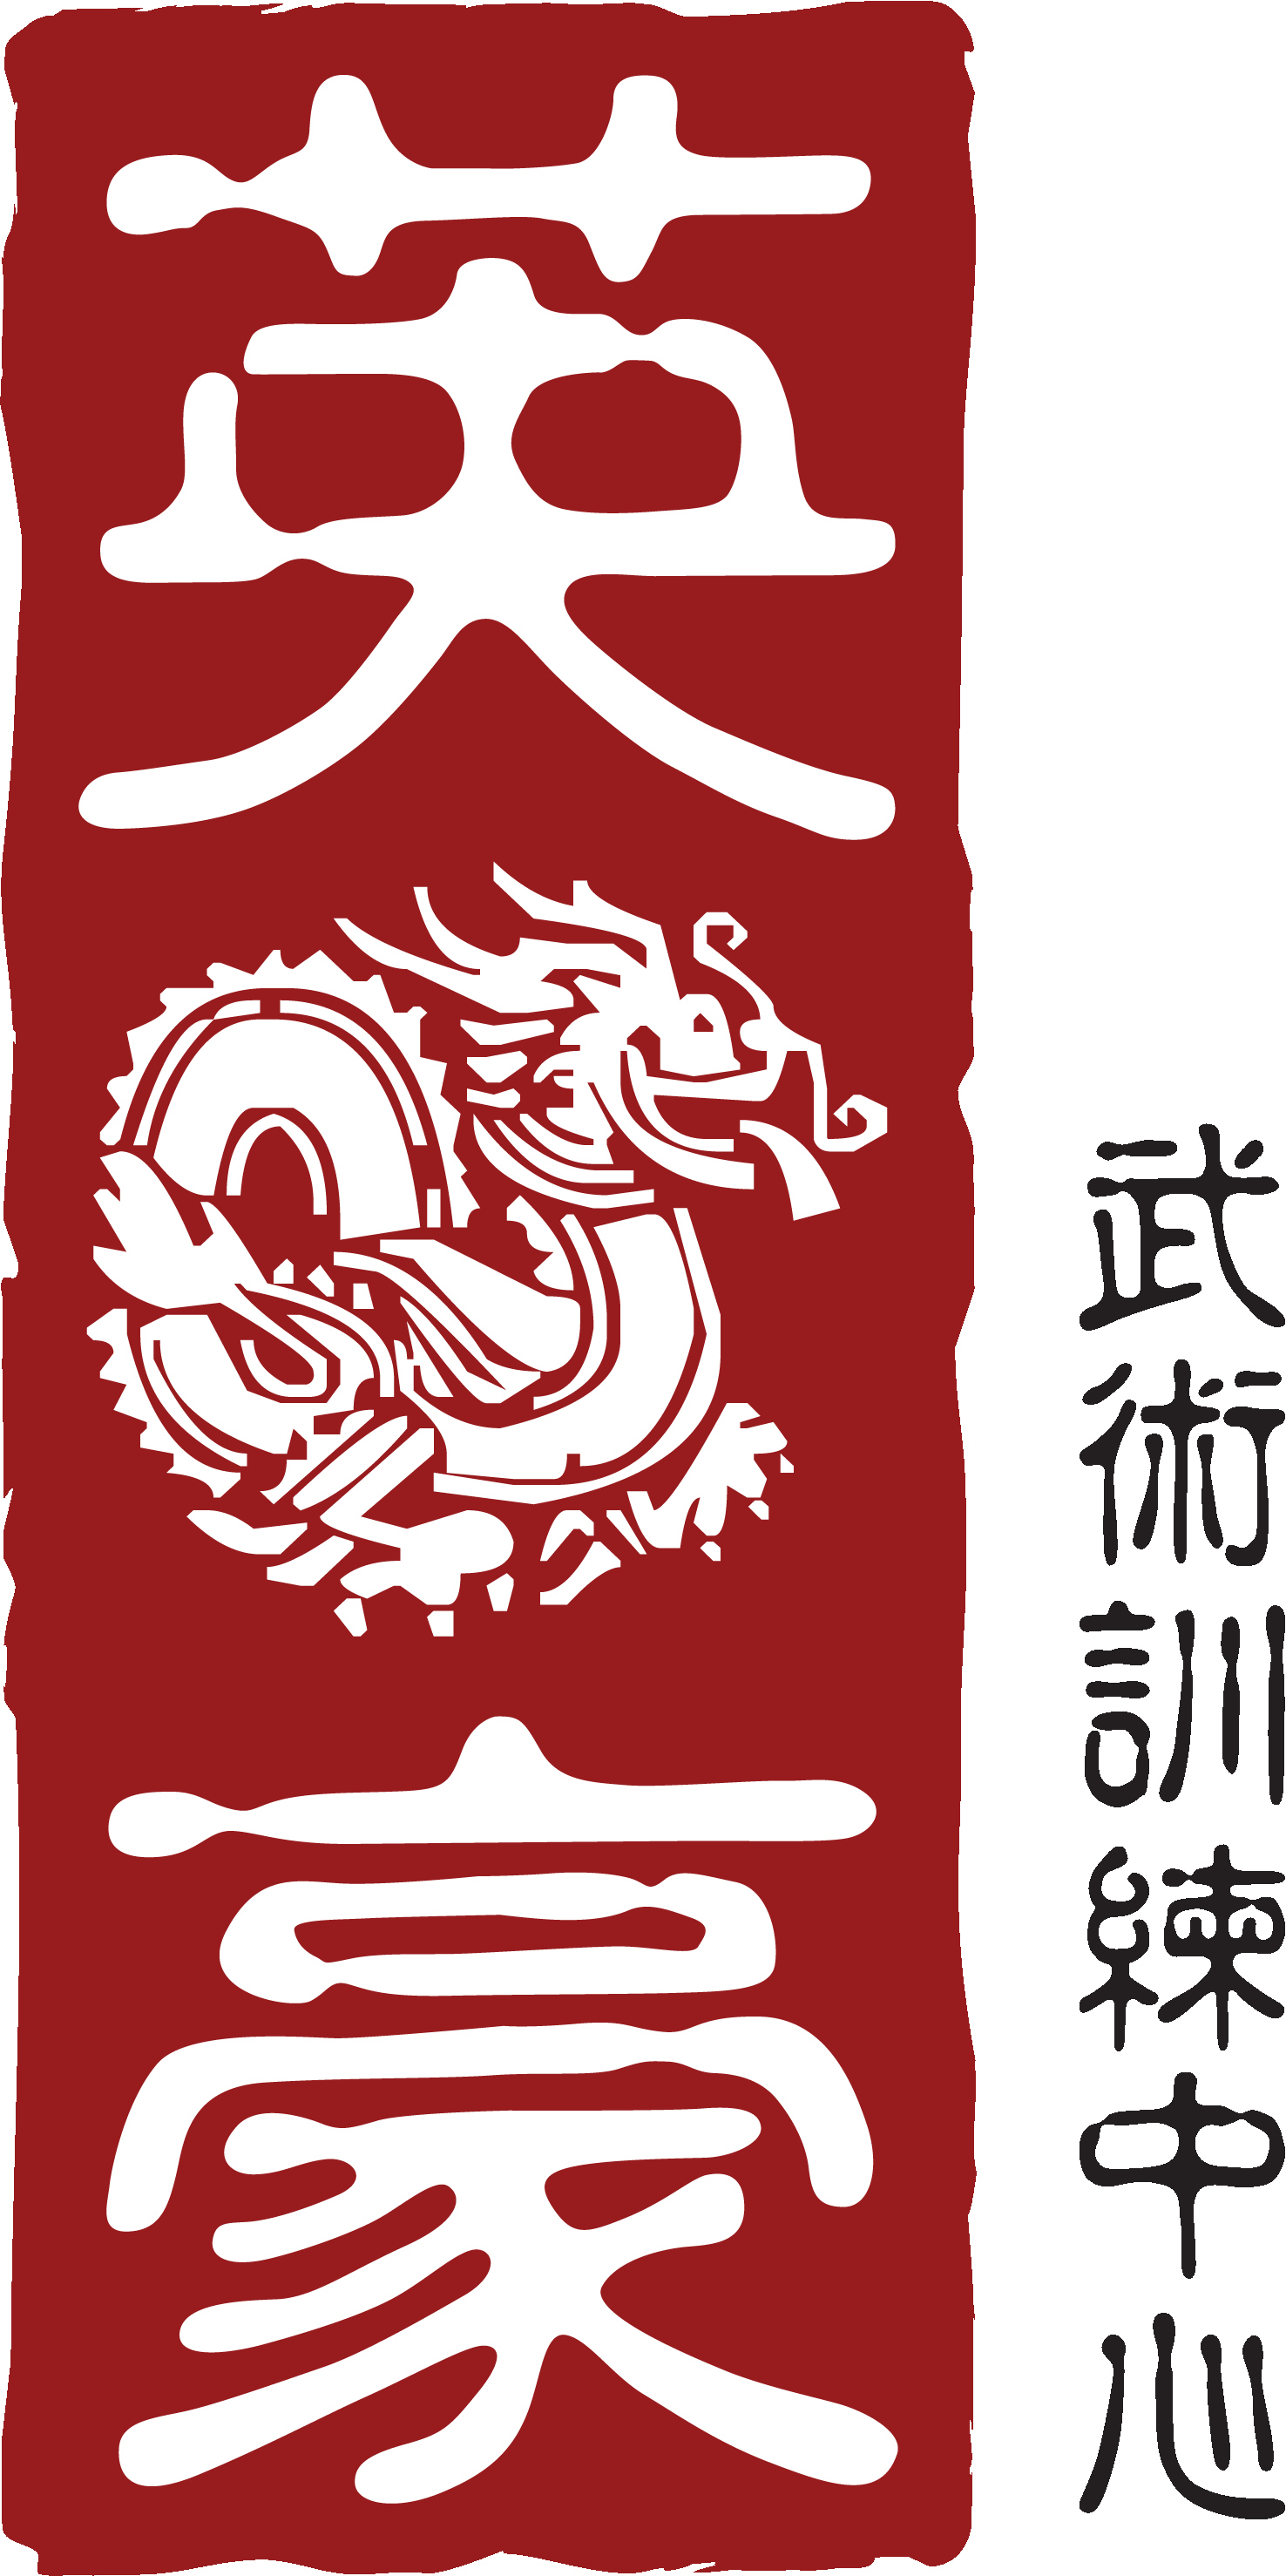 logo wushu